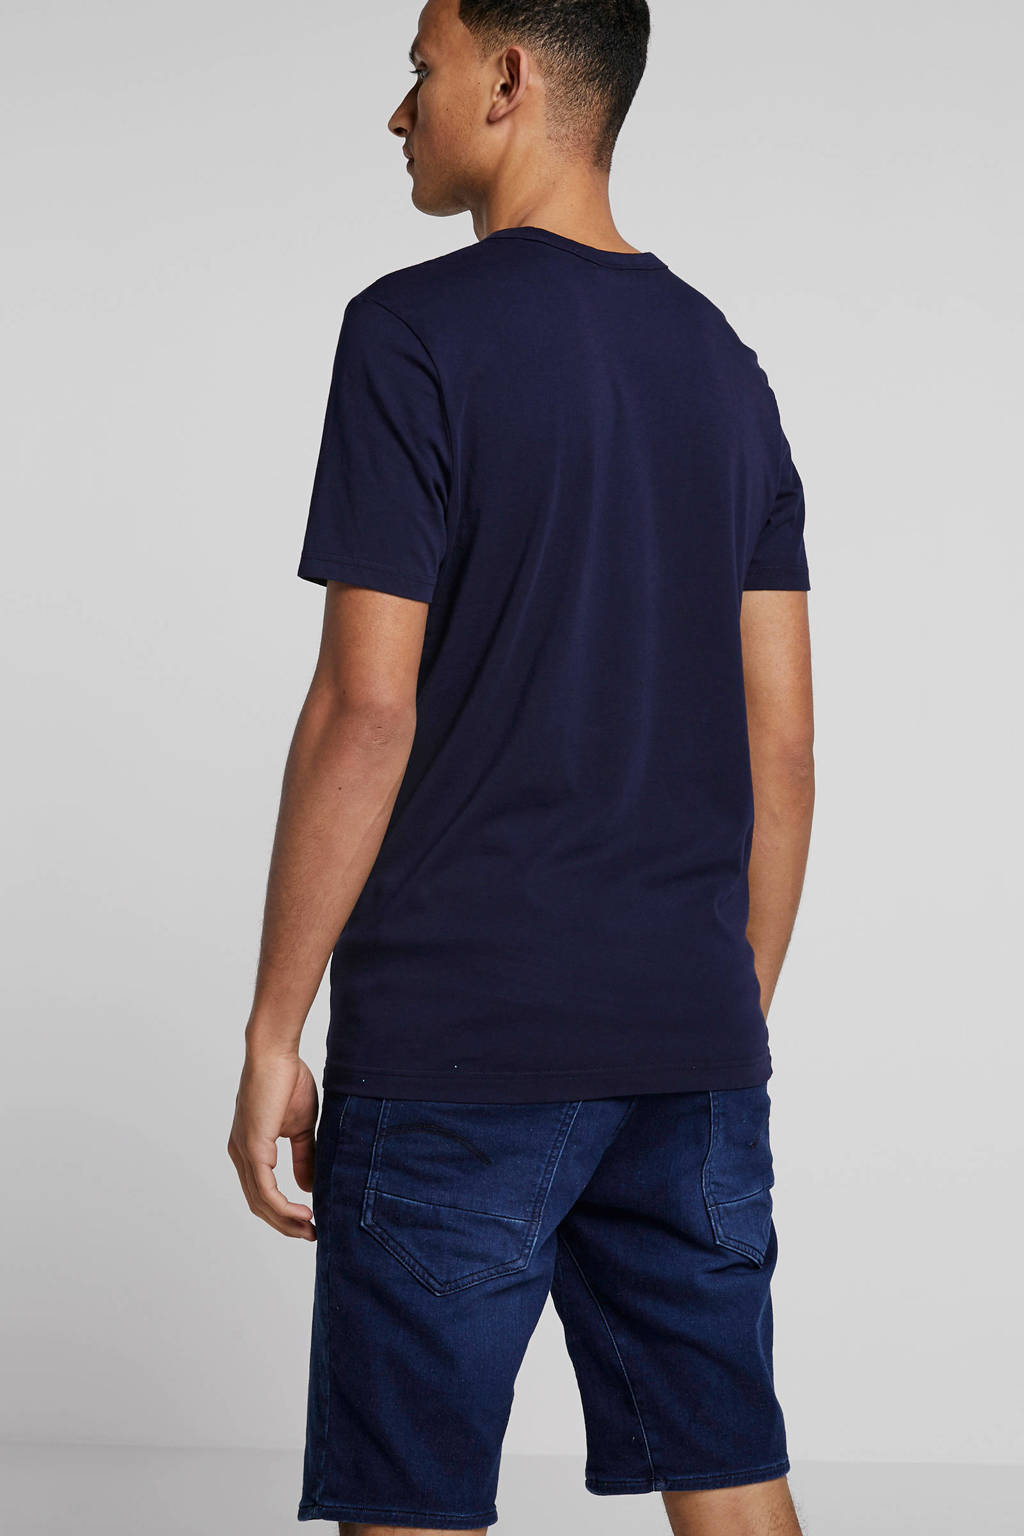 Donkerblauwe heren G-Star RAW T-shirt van biologisch katoen met logo dessin, korte mouwen en ronde hals